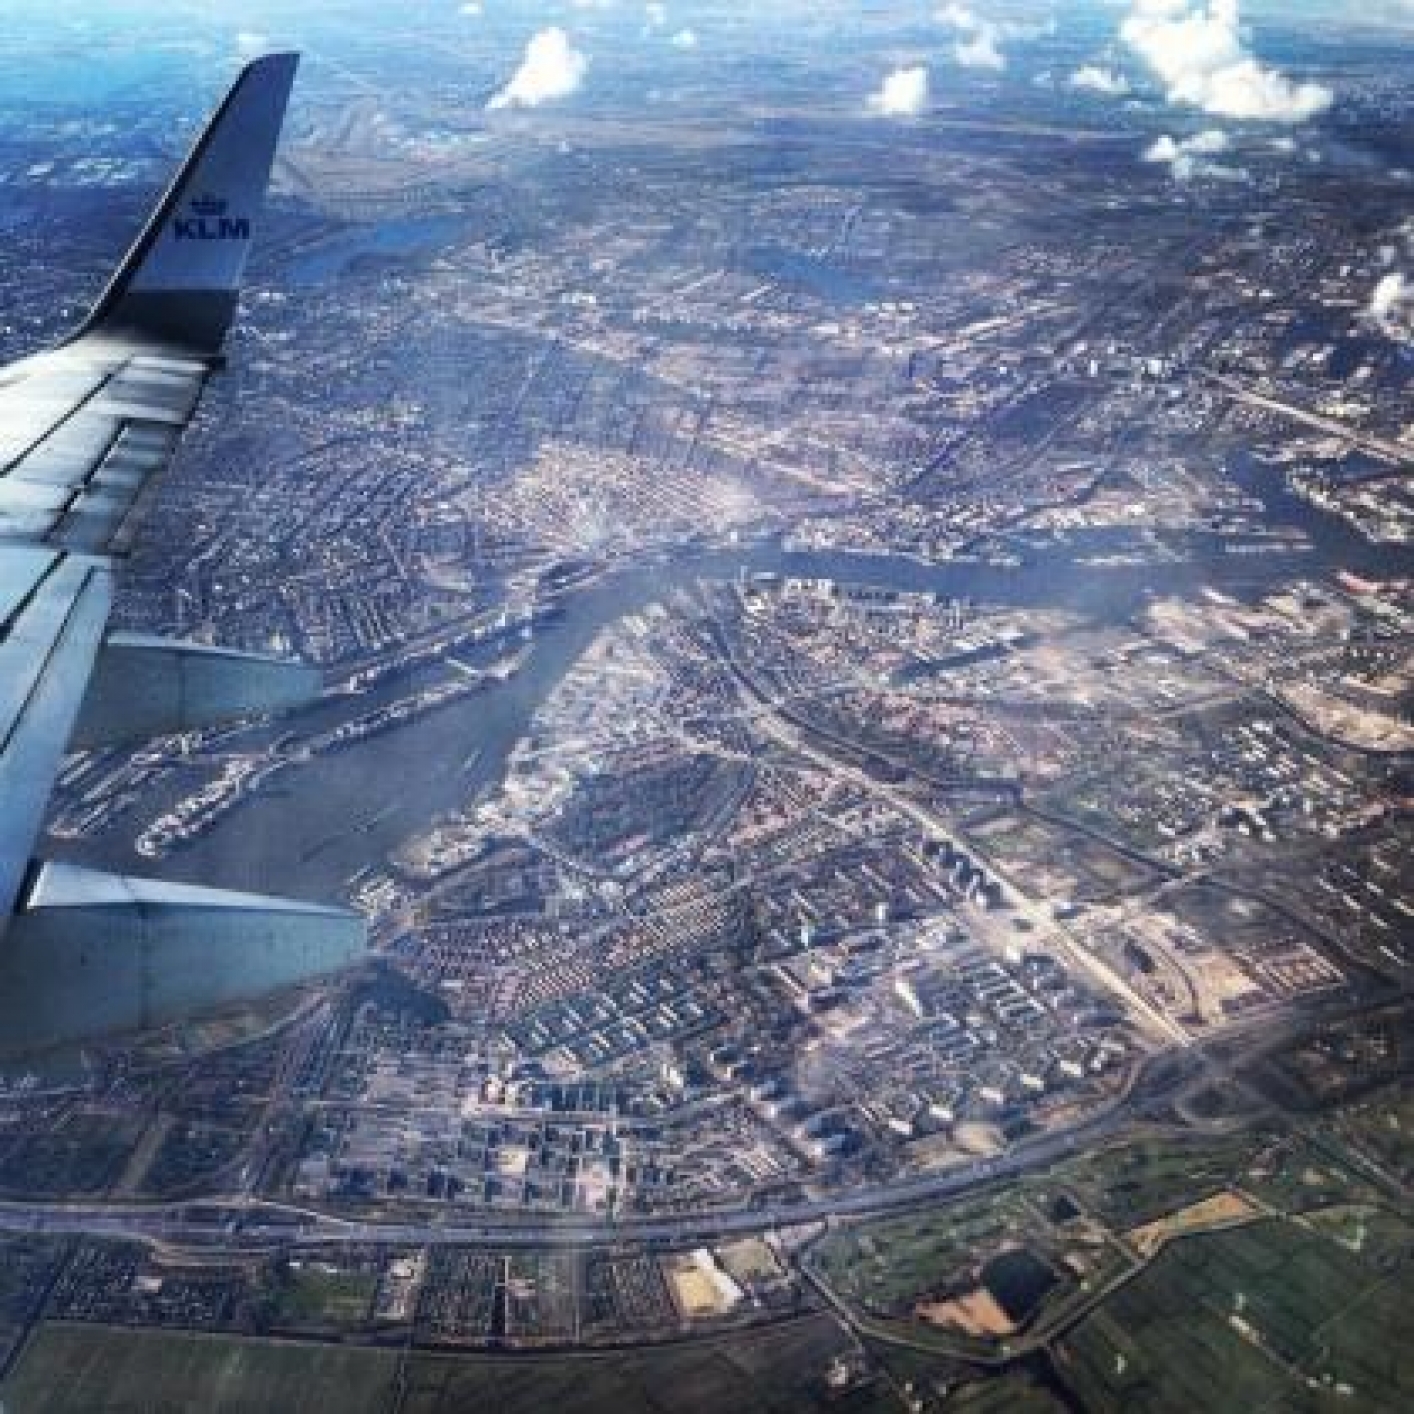 Luchtfoto metropoolregio Amsterdam - Schiphol